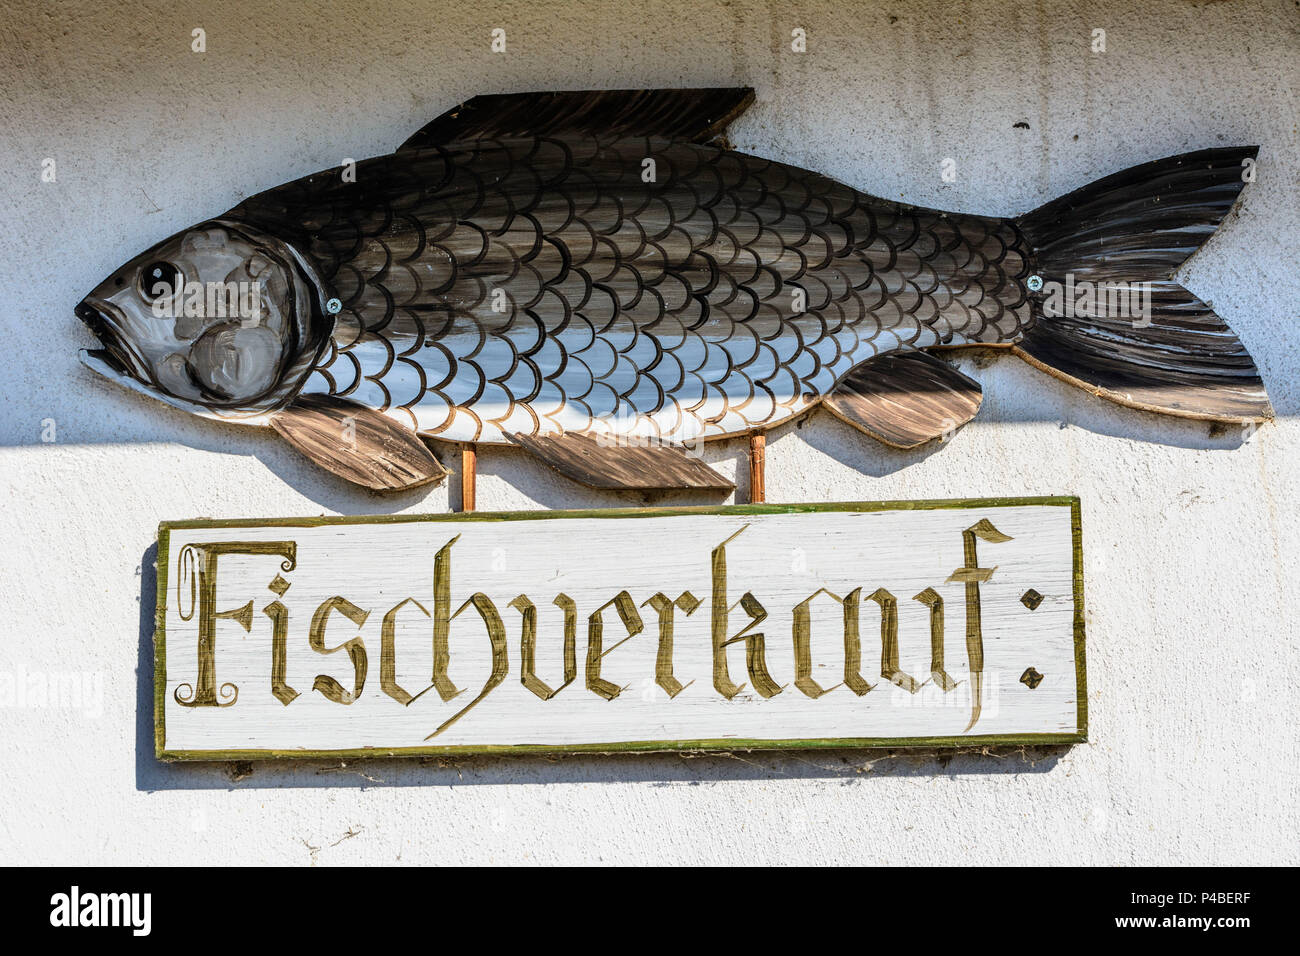 Geras, sign 'Fischverkauf' (fish sale) at Fischkalter with carp, Waldviertel (Forest Quarter), Lower Austria, Austria Stock Photo